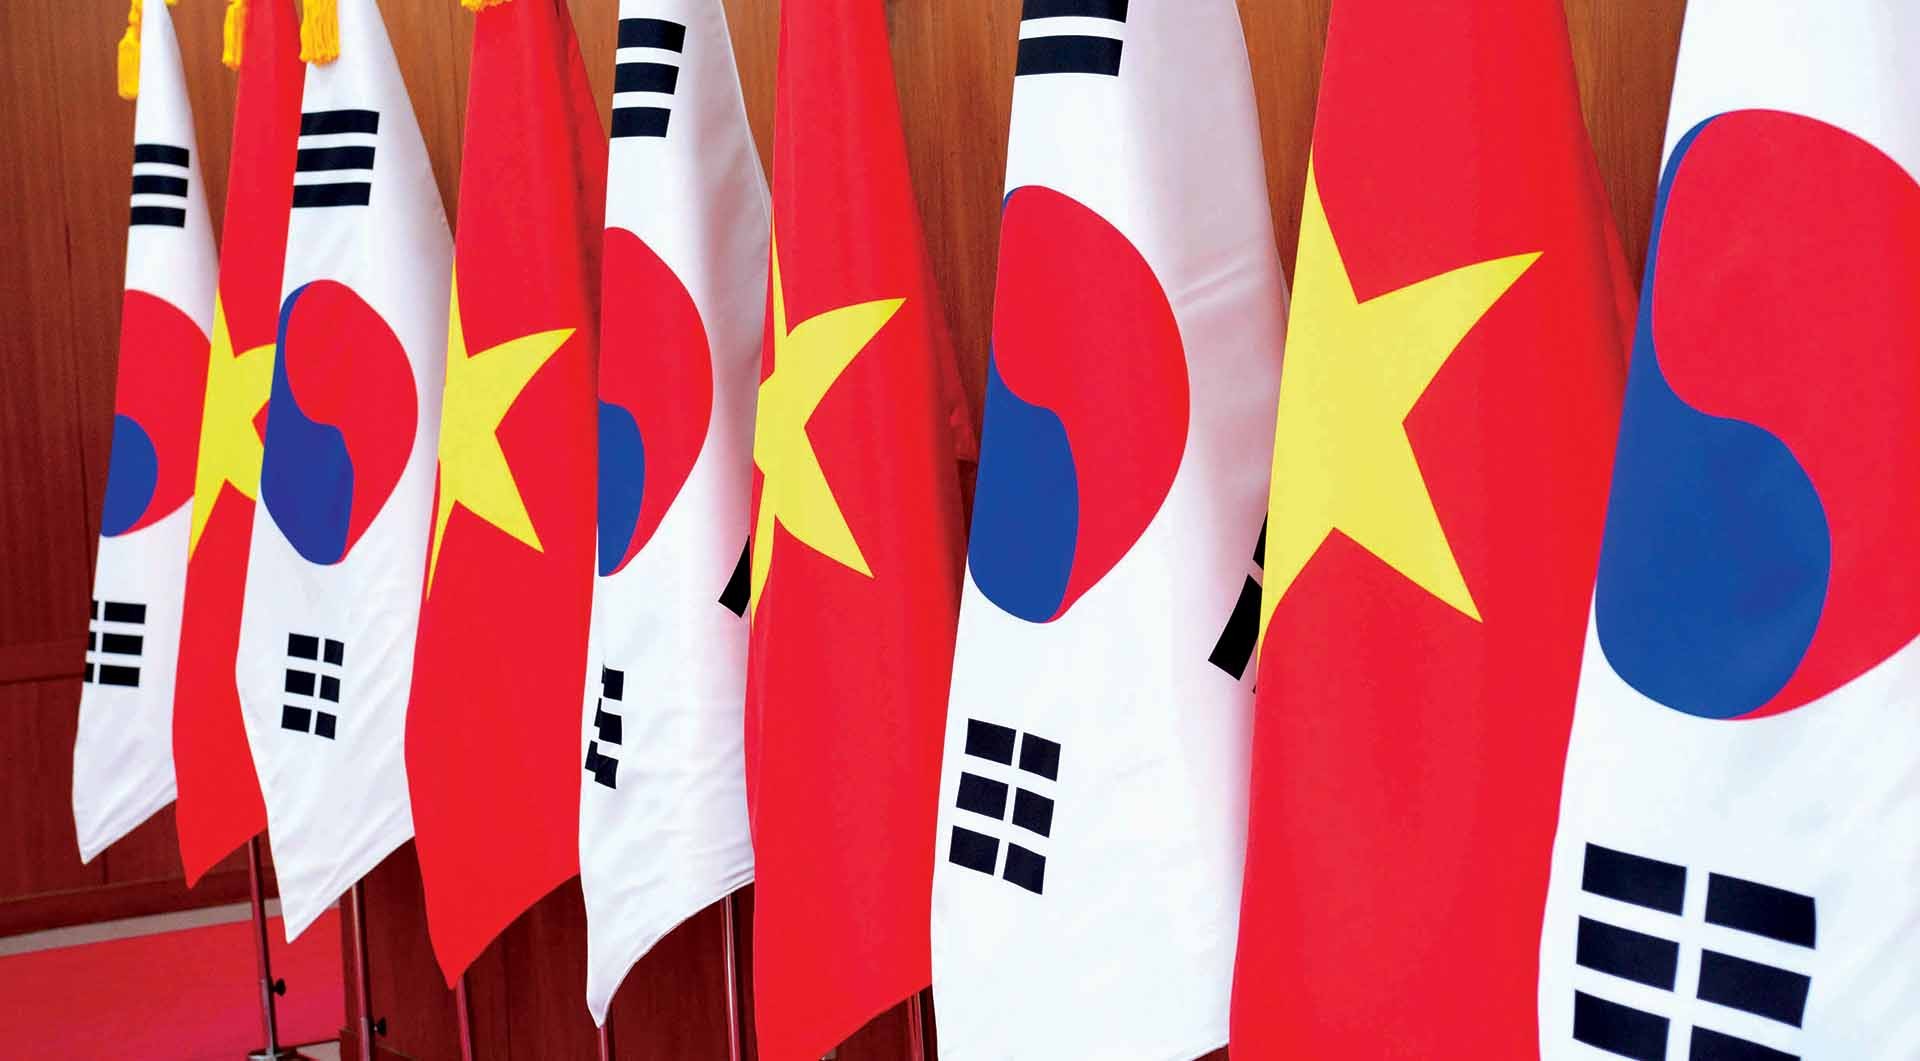 Năm nay, Việt Nam và Hàn Quốc chính thức kỷ niệm 30 năm quan hệ của hai nước. Để ghi nhận sự kiện này, chúng ta có thể cùng xem lại hình ảnh về quốc kỳ Việt - Hàn với hai màu cờ đẹp, trang trọng và ý nghĩa.